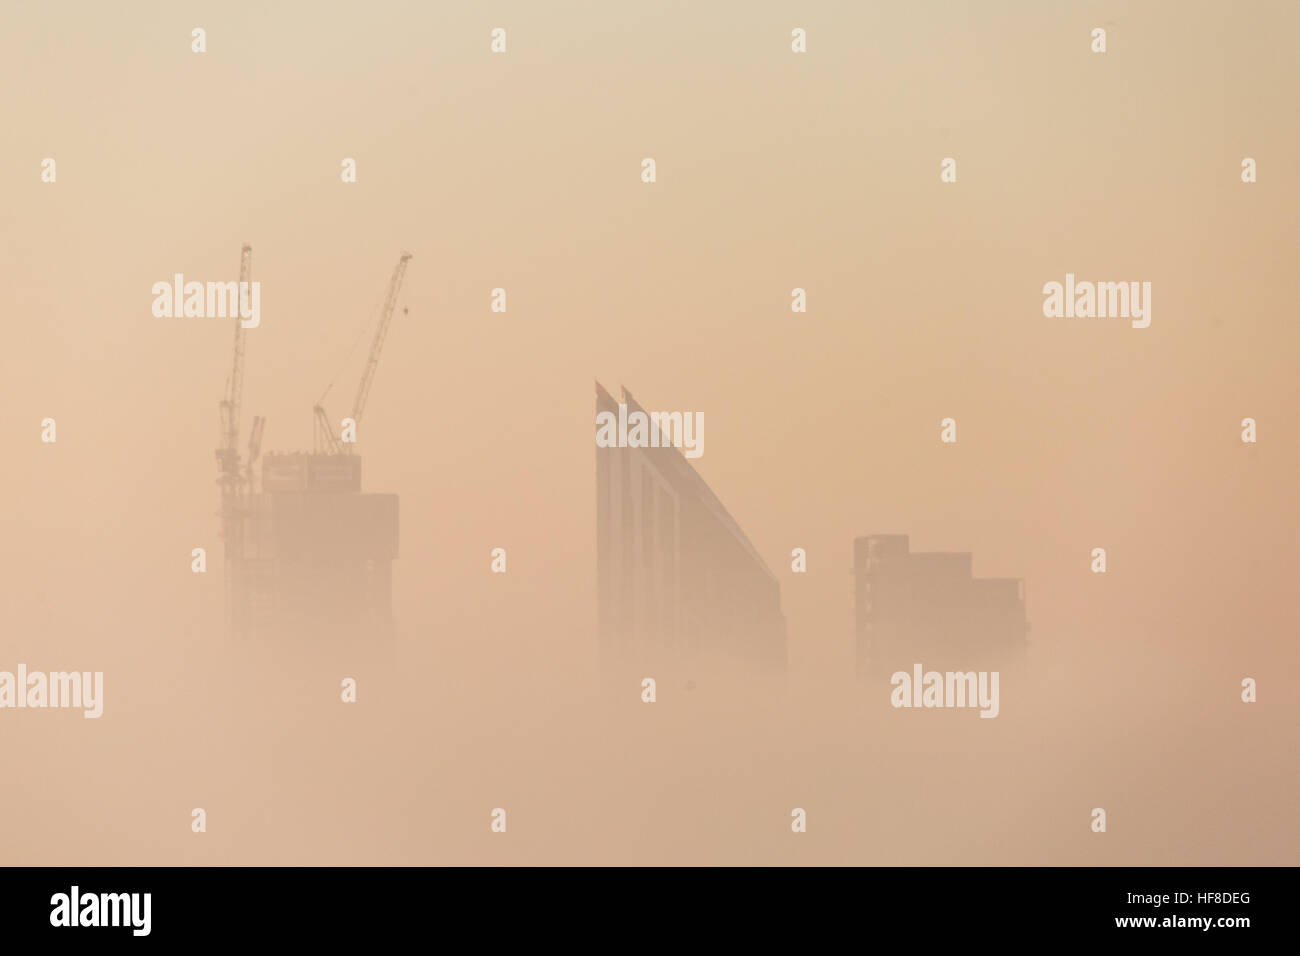 Londres, Royaume-Uni. 28 Décembre, 2016. Ubisoft SE1 gratte-ciel résidentiel bâtiment vu dans la lumière du soir à travers un épais brouillard © Guy Josse/Alamy Live News Banque D'Images